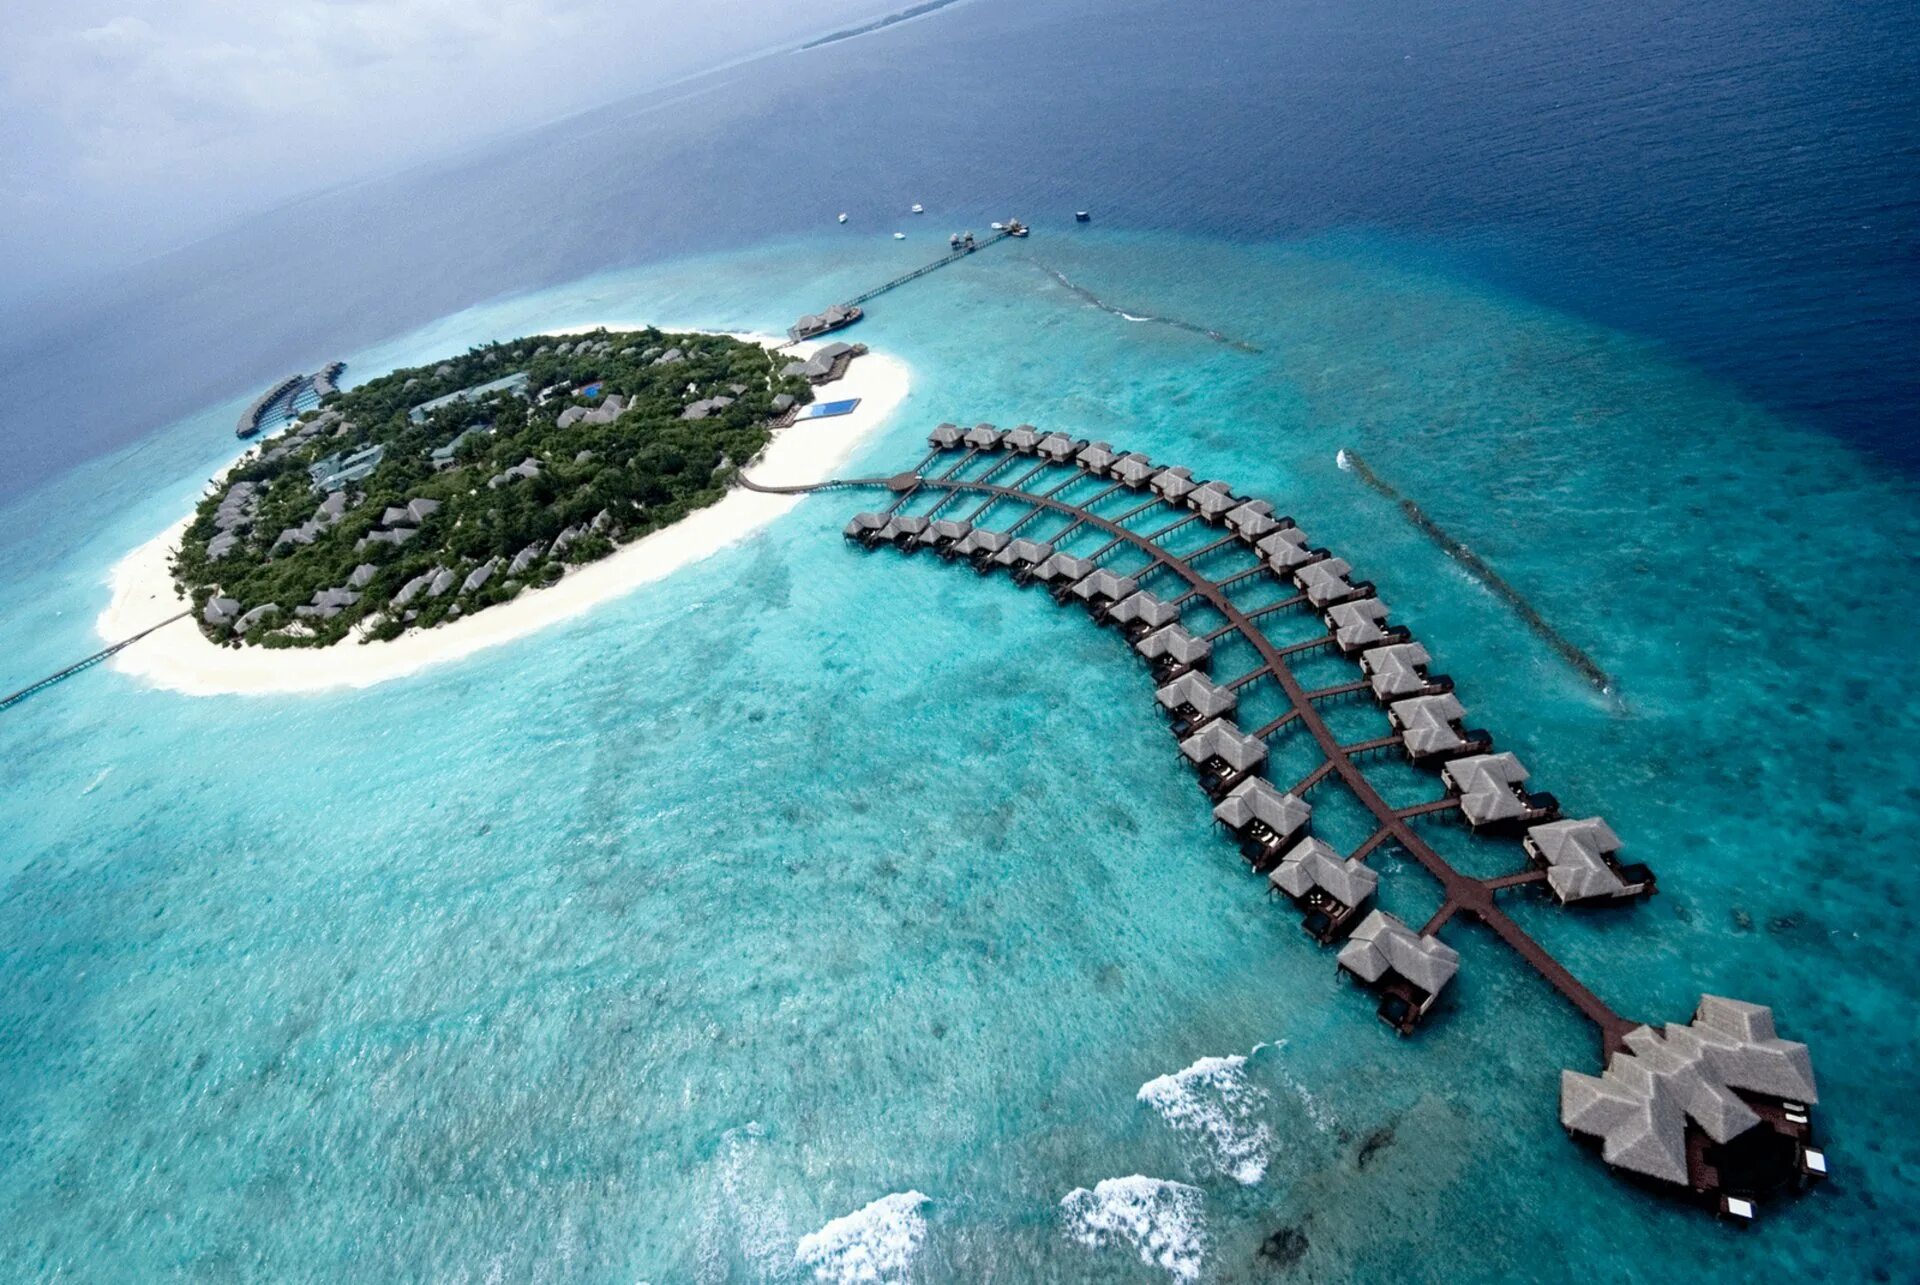 Второй остров в мире. Хаа Алифу Атолл Мальдивы. Мальдивы Гаафу-Дхаалу. Остров Ган Мальдивы. Аэропорт gan Мальдивы.